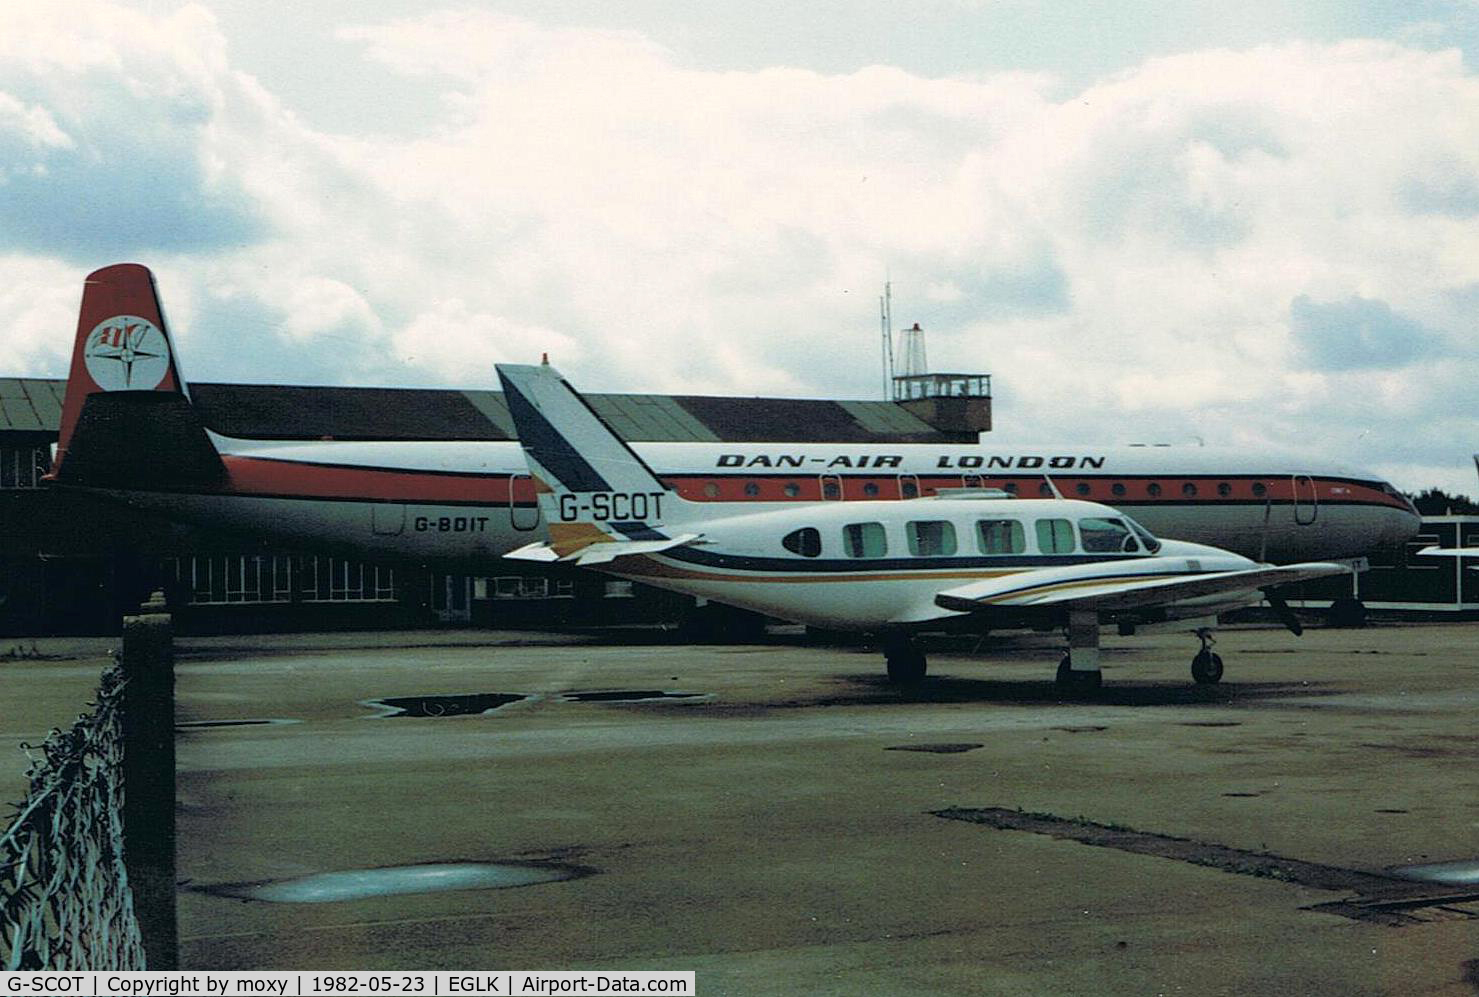 G-SCOT, 1977 Piper PA-31-350 Chieftain C/N 31-7752190, AT BLACKBUSHE WITH DAN AIR COMET G-BDIT